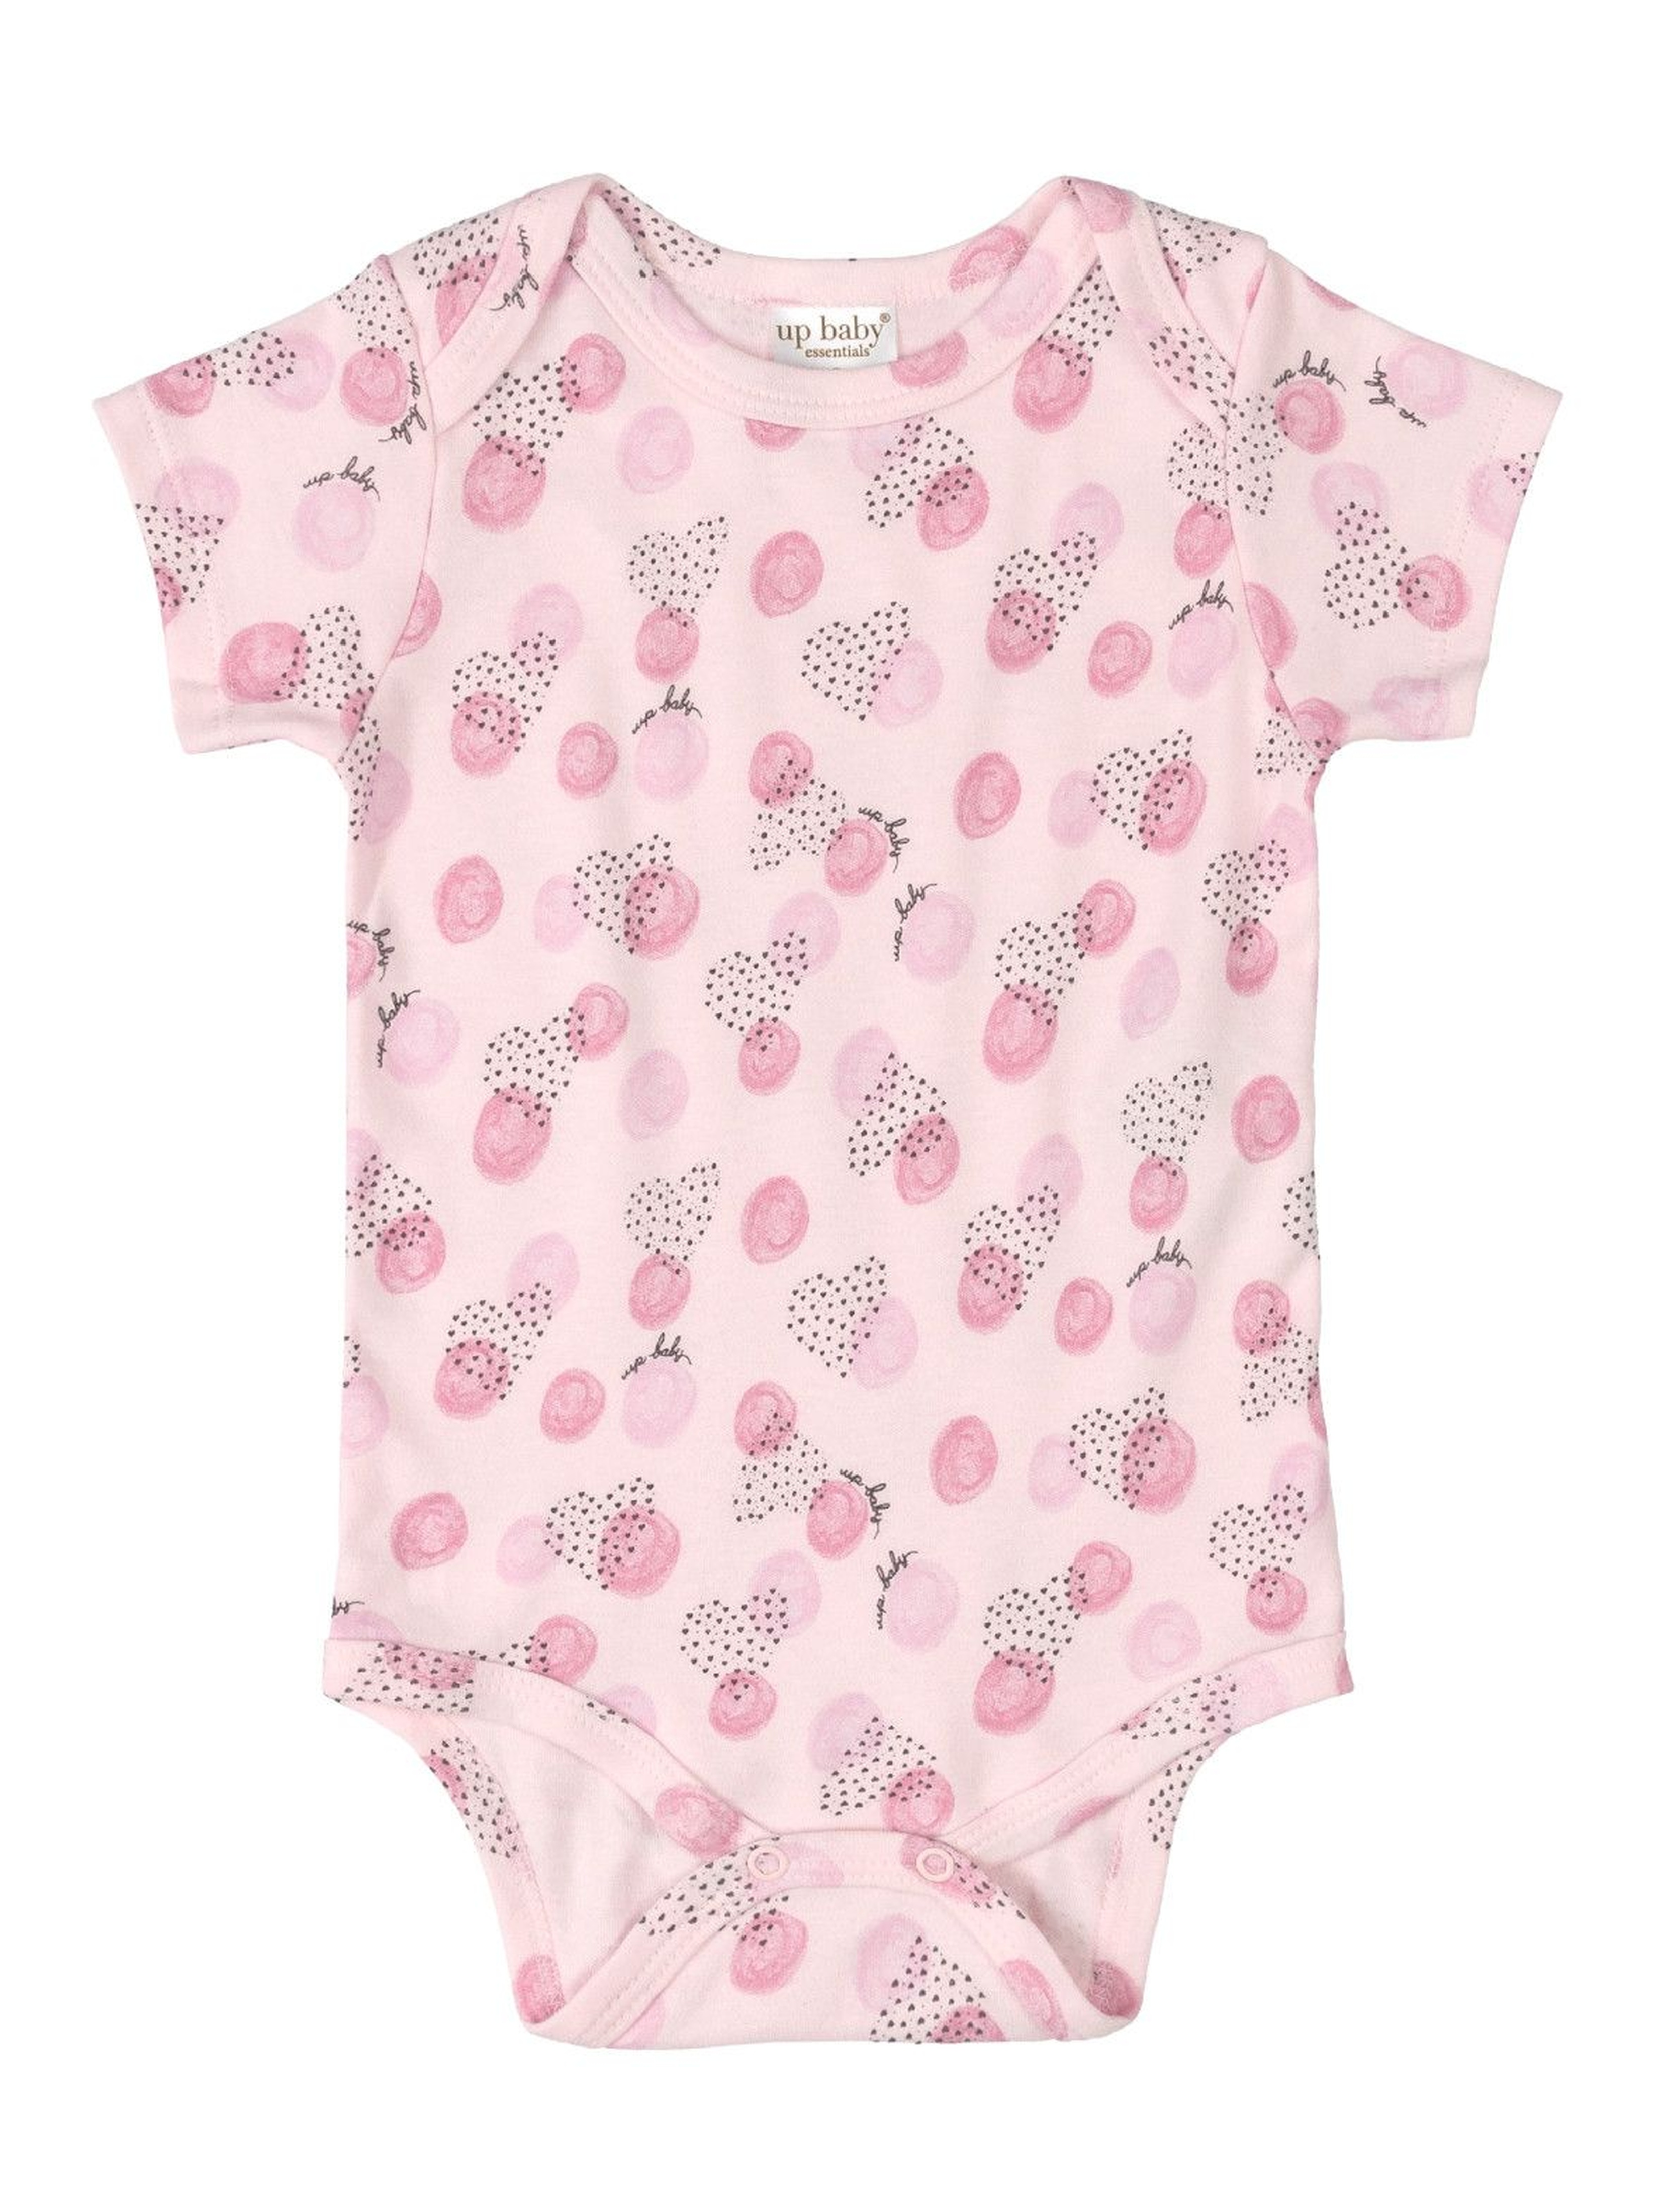 Body niemowlęce we wzorki  - różowe